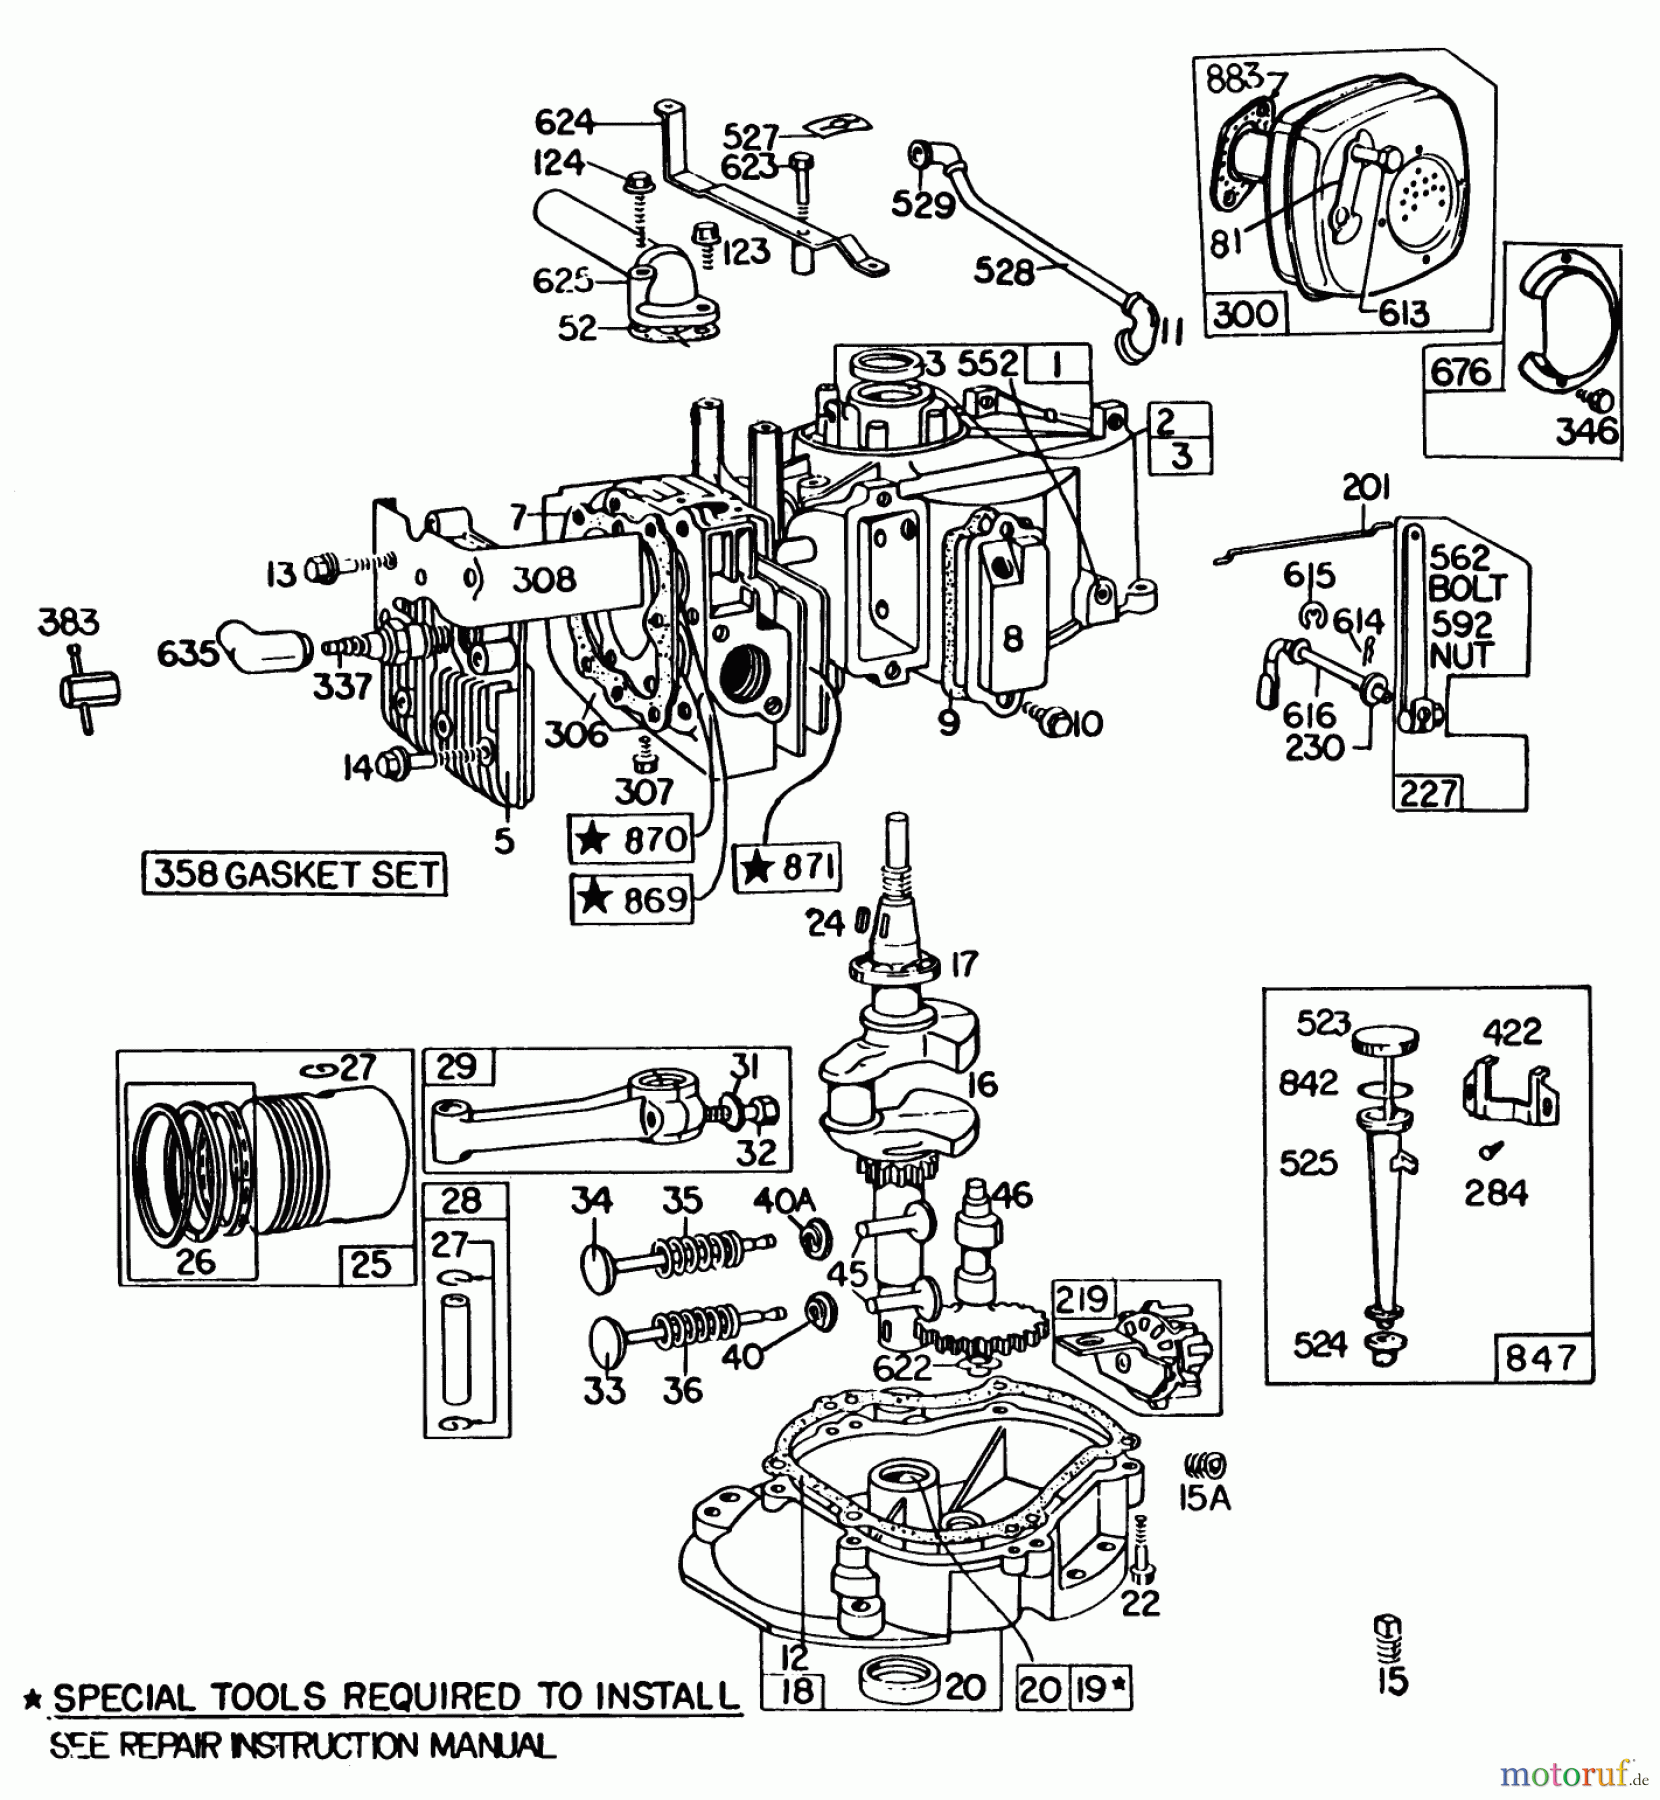  Toro Neu Mowers, Walk-Behind Seite 2 22020 - Toro Lawnmower, 1984 (4000001-4999999) ENGINE BRIGGS & STRATTON MODEL 131922-0163-01 #1